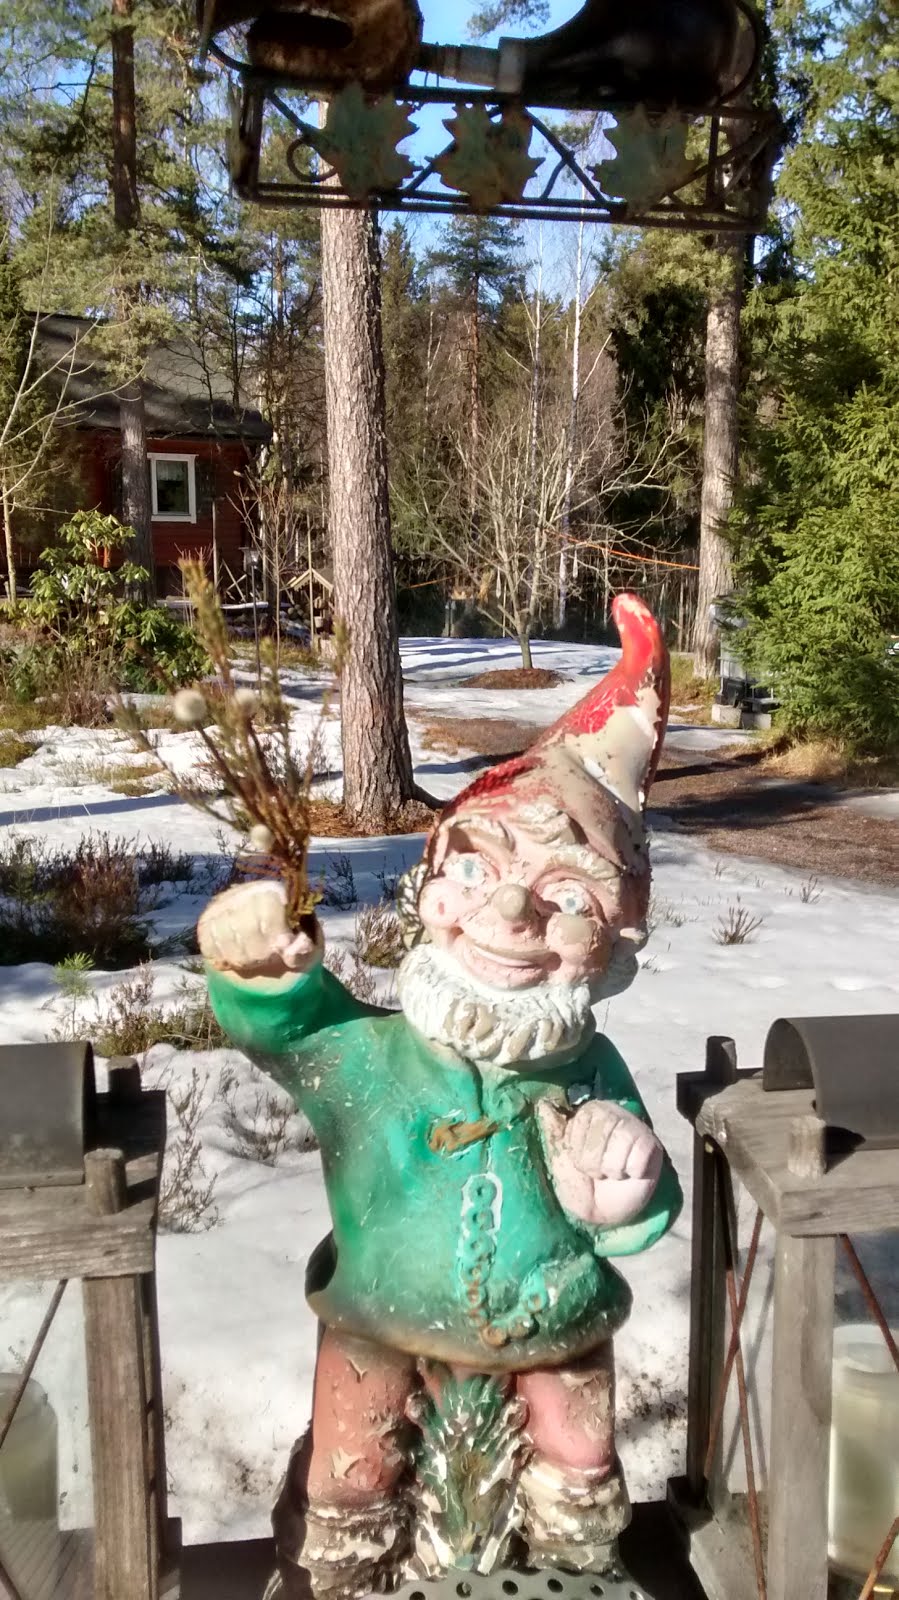 The Happy Gnome